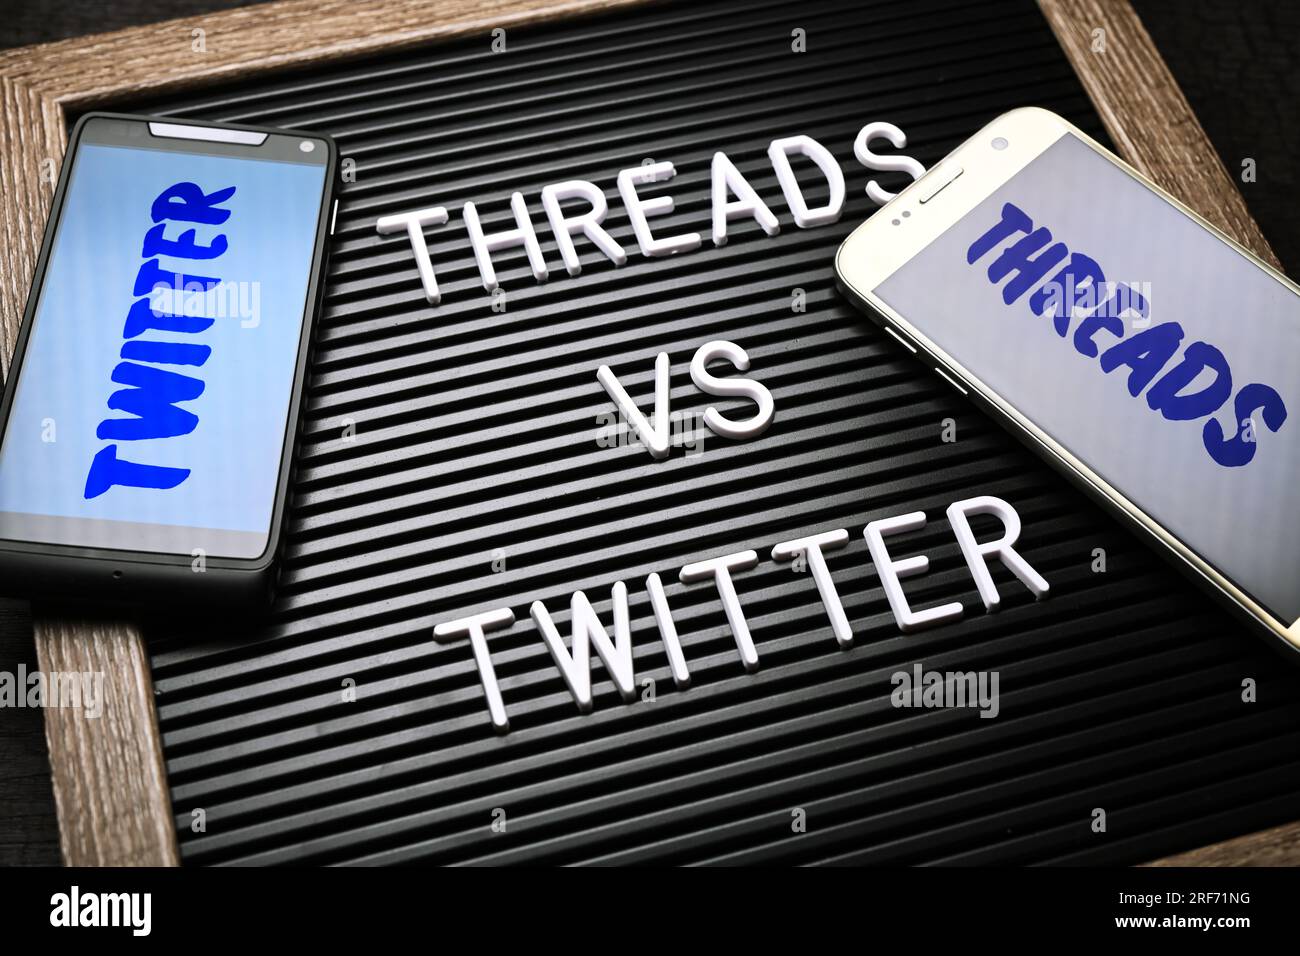 FOTOMONTAGE, Auf einer Tafel steht threads vs Twitter, neuer Kurznachrichtendienst thread Twitter Konkurrenz machen Foto Stock